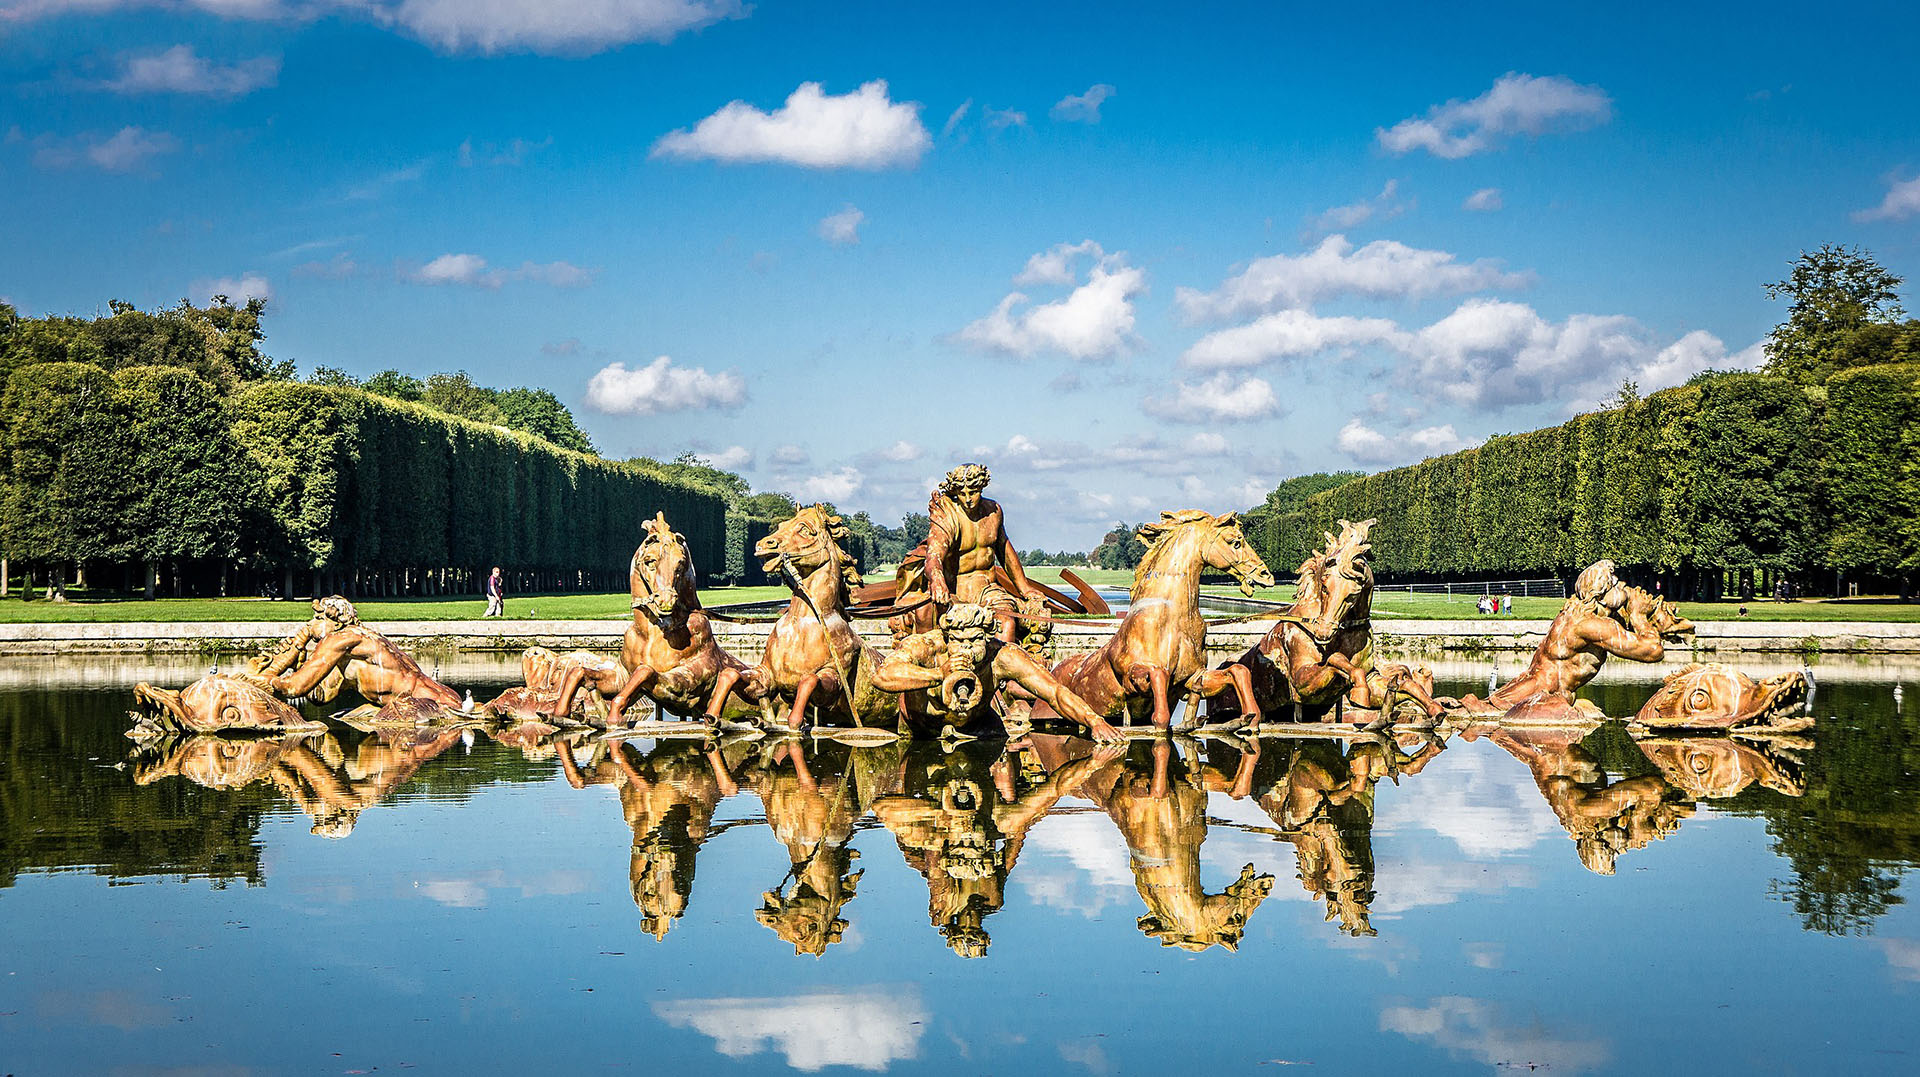 Le Bassin d'Apollon du château de Versailles représente le dieu grec sortant de l'eau dans un chariot tiré par quatre chevaux. © gags9999, Wikimedia Commons, CC by 2.0